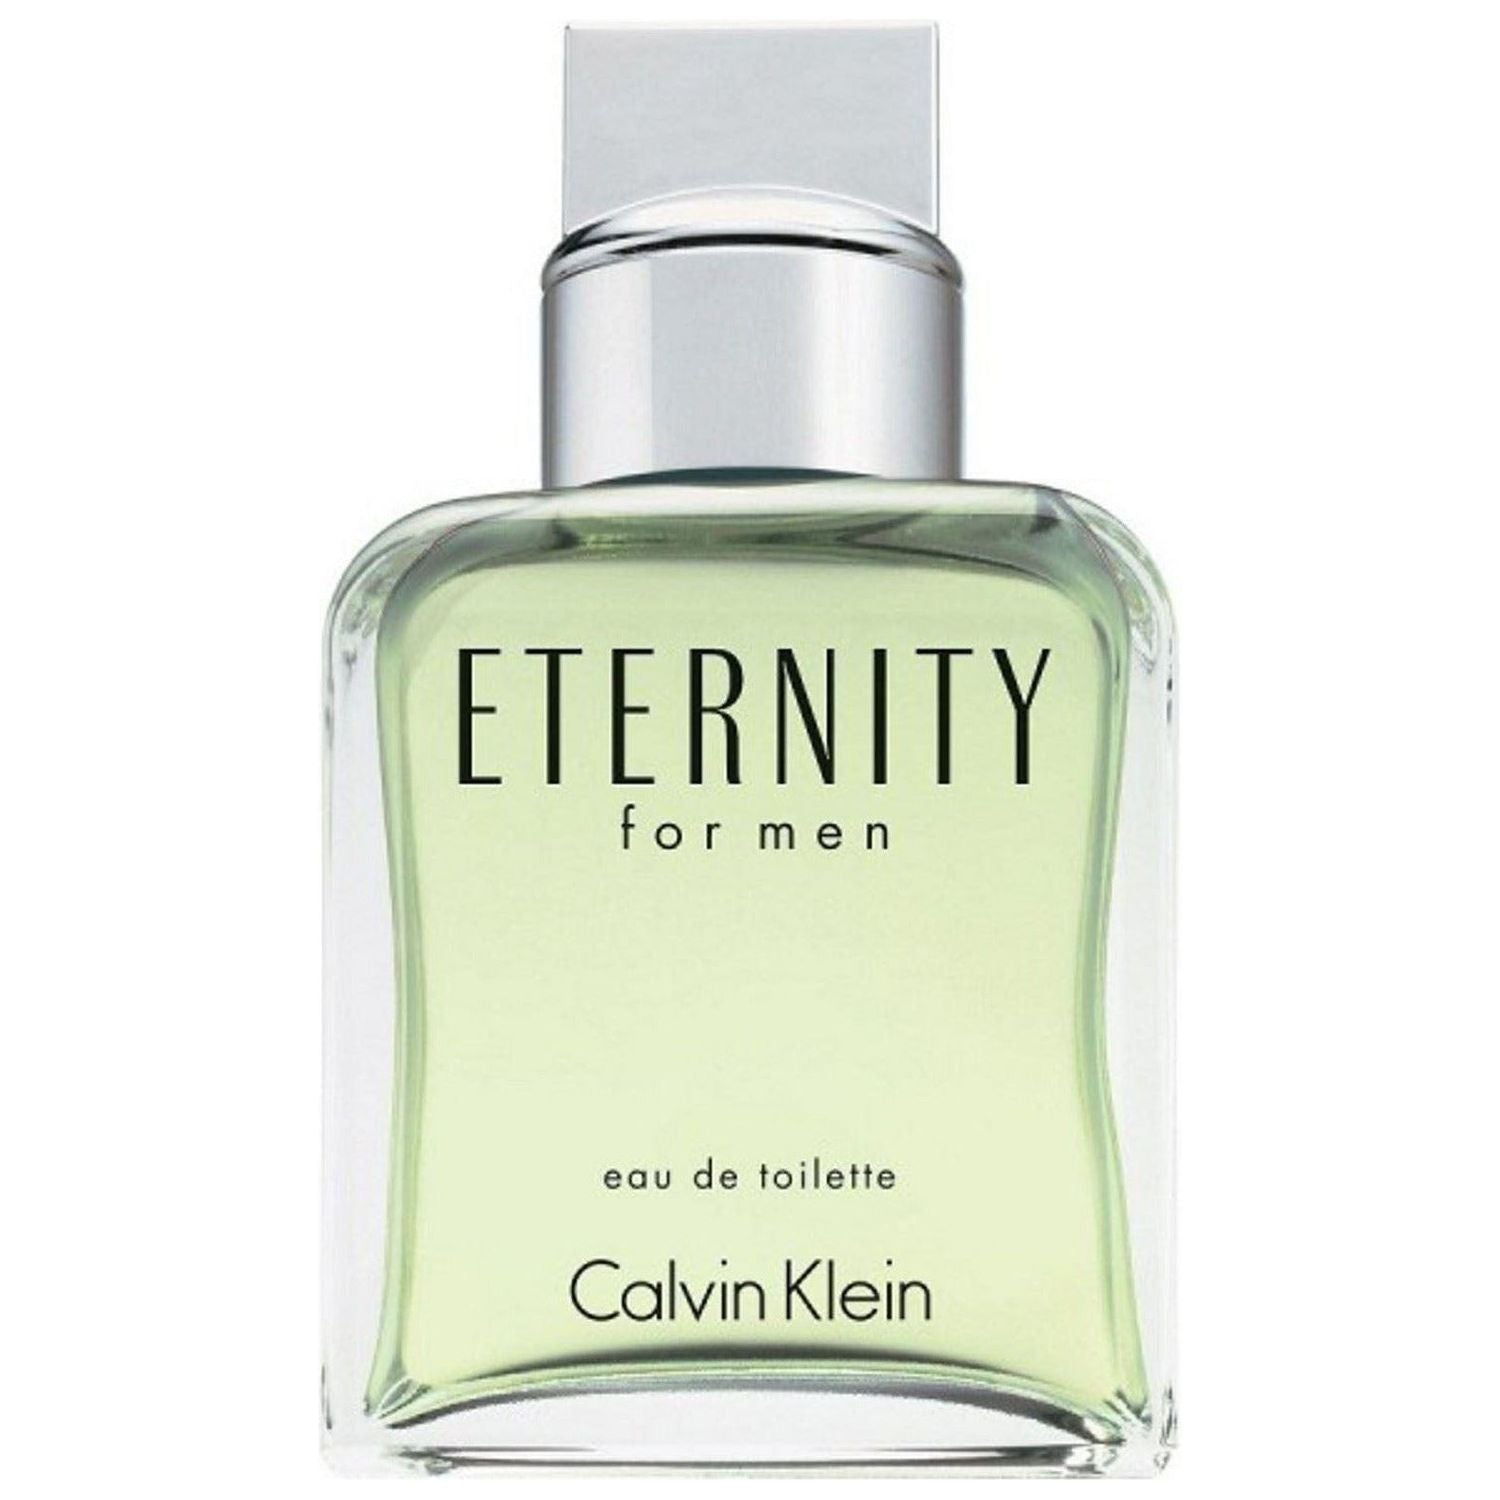 Eternity for Men by Calvin Klein 3.4 oz EDT Tester